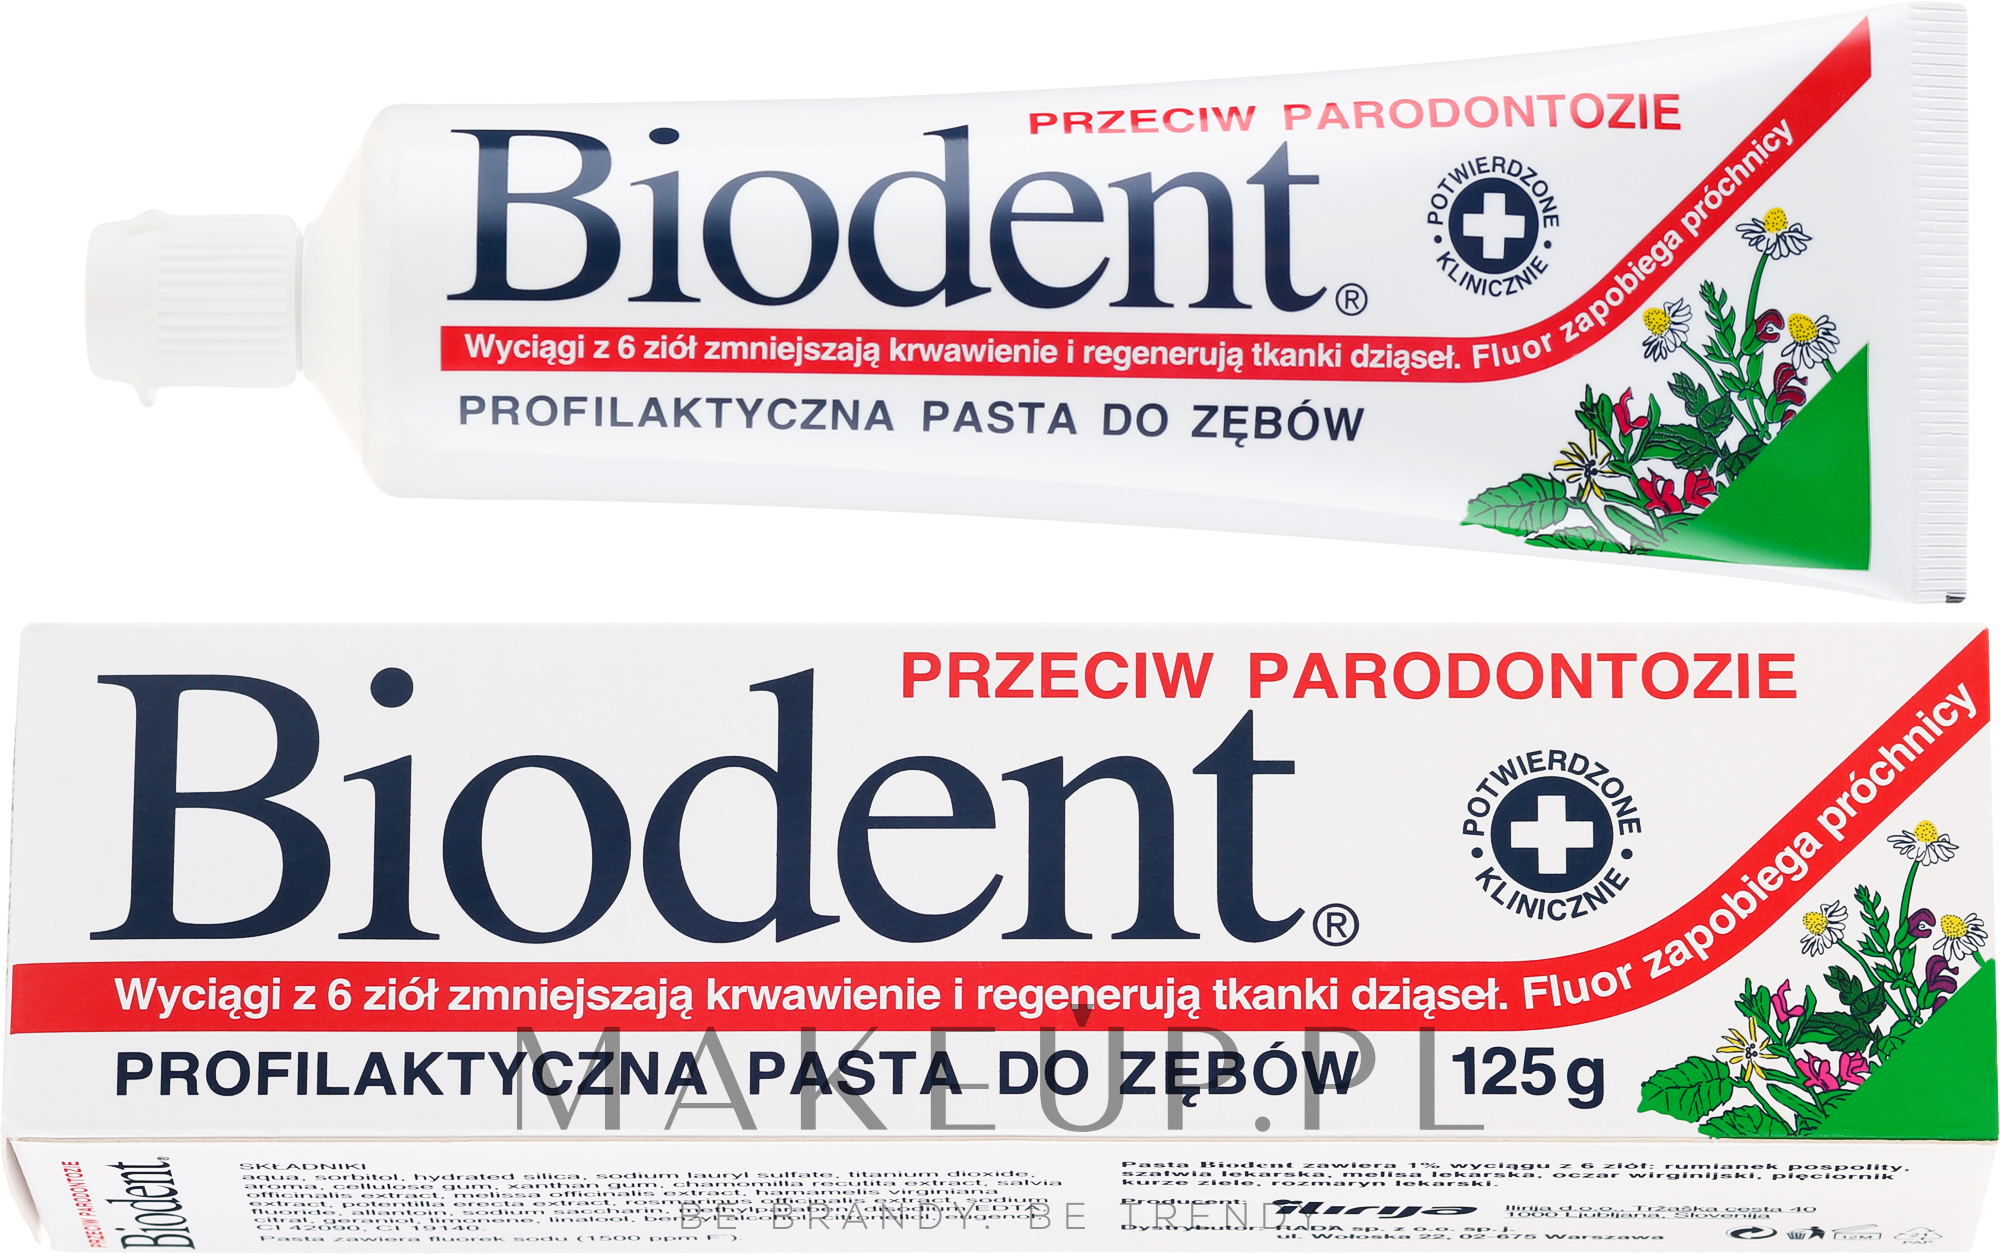 PRZECENA! Profilaktyczna pasta do zębów przeciw paradontozie - Biodent * — Zdjęcie 125 g